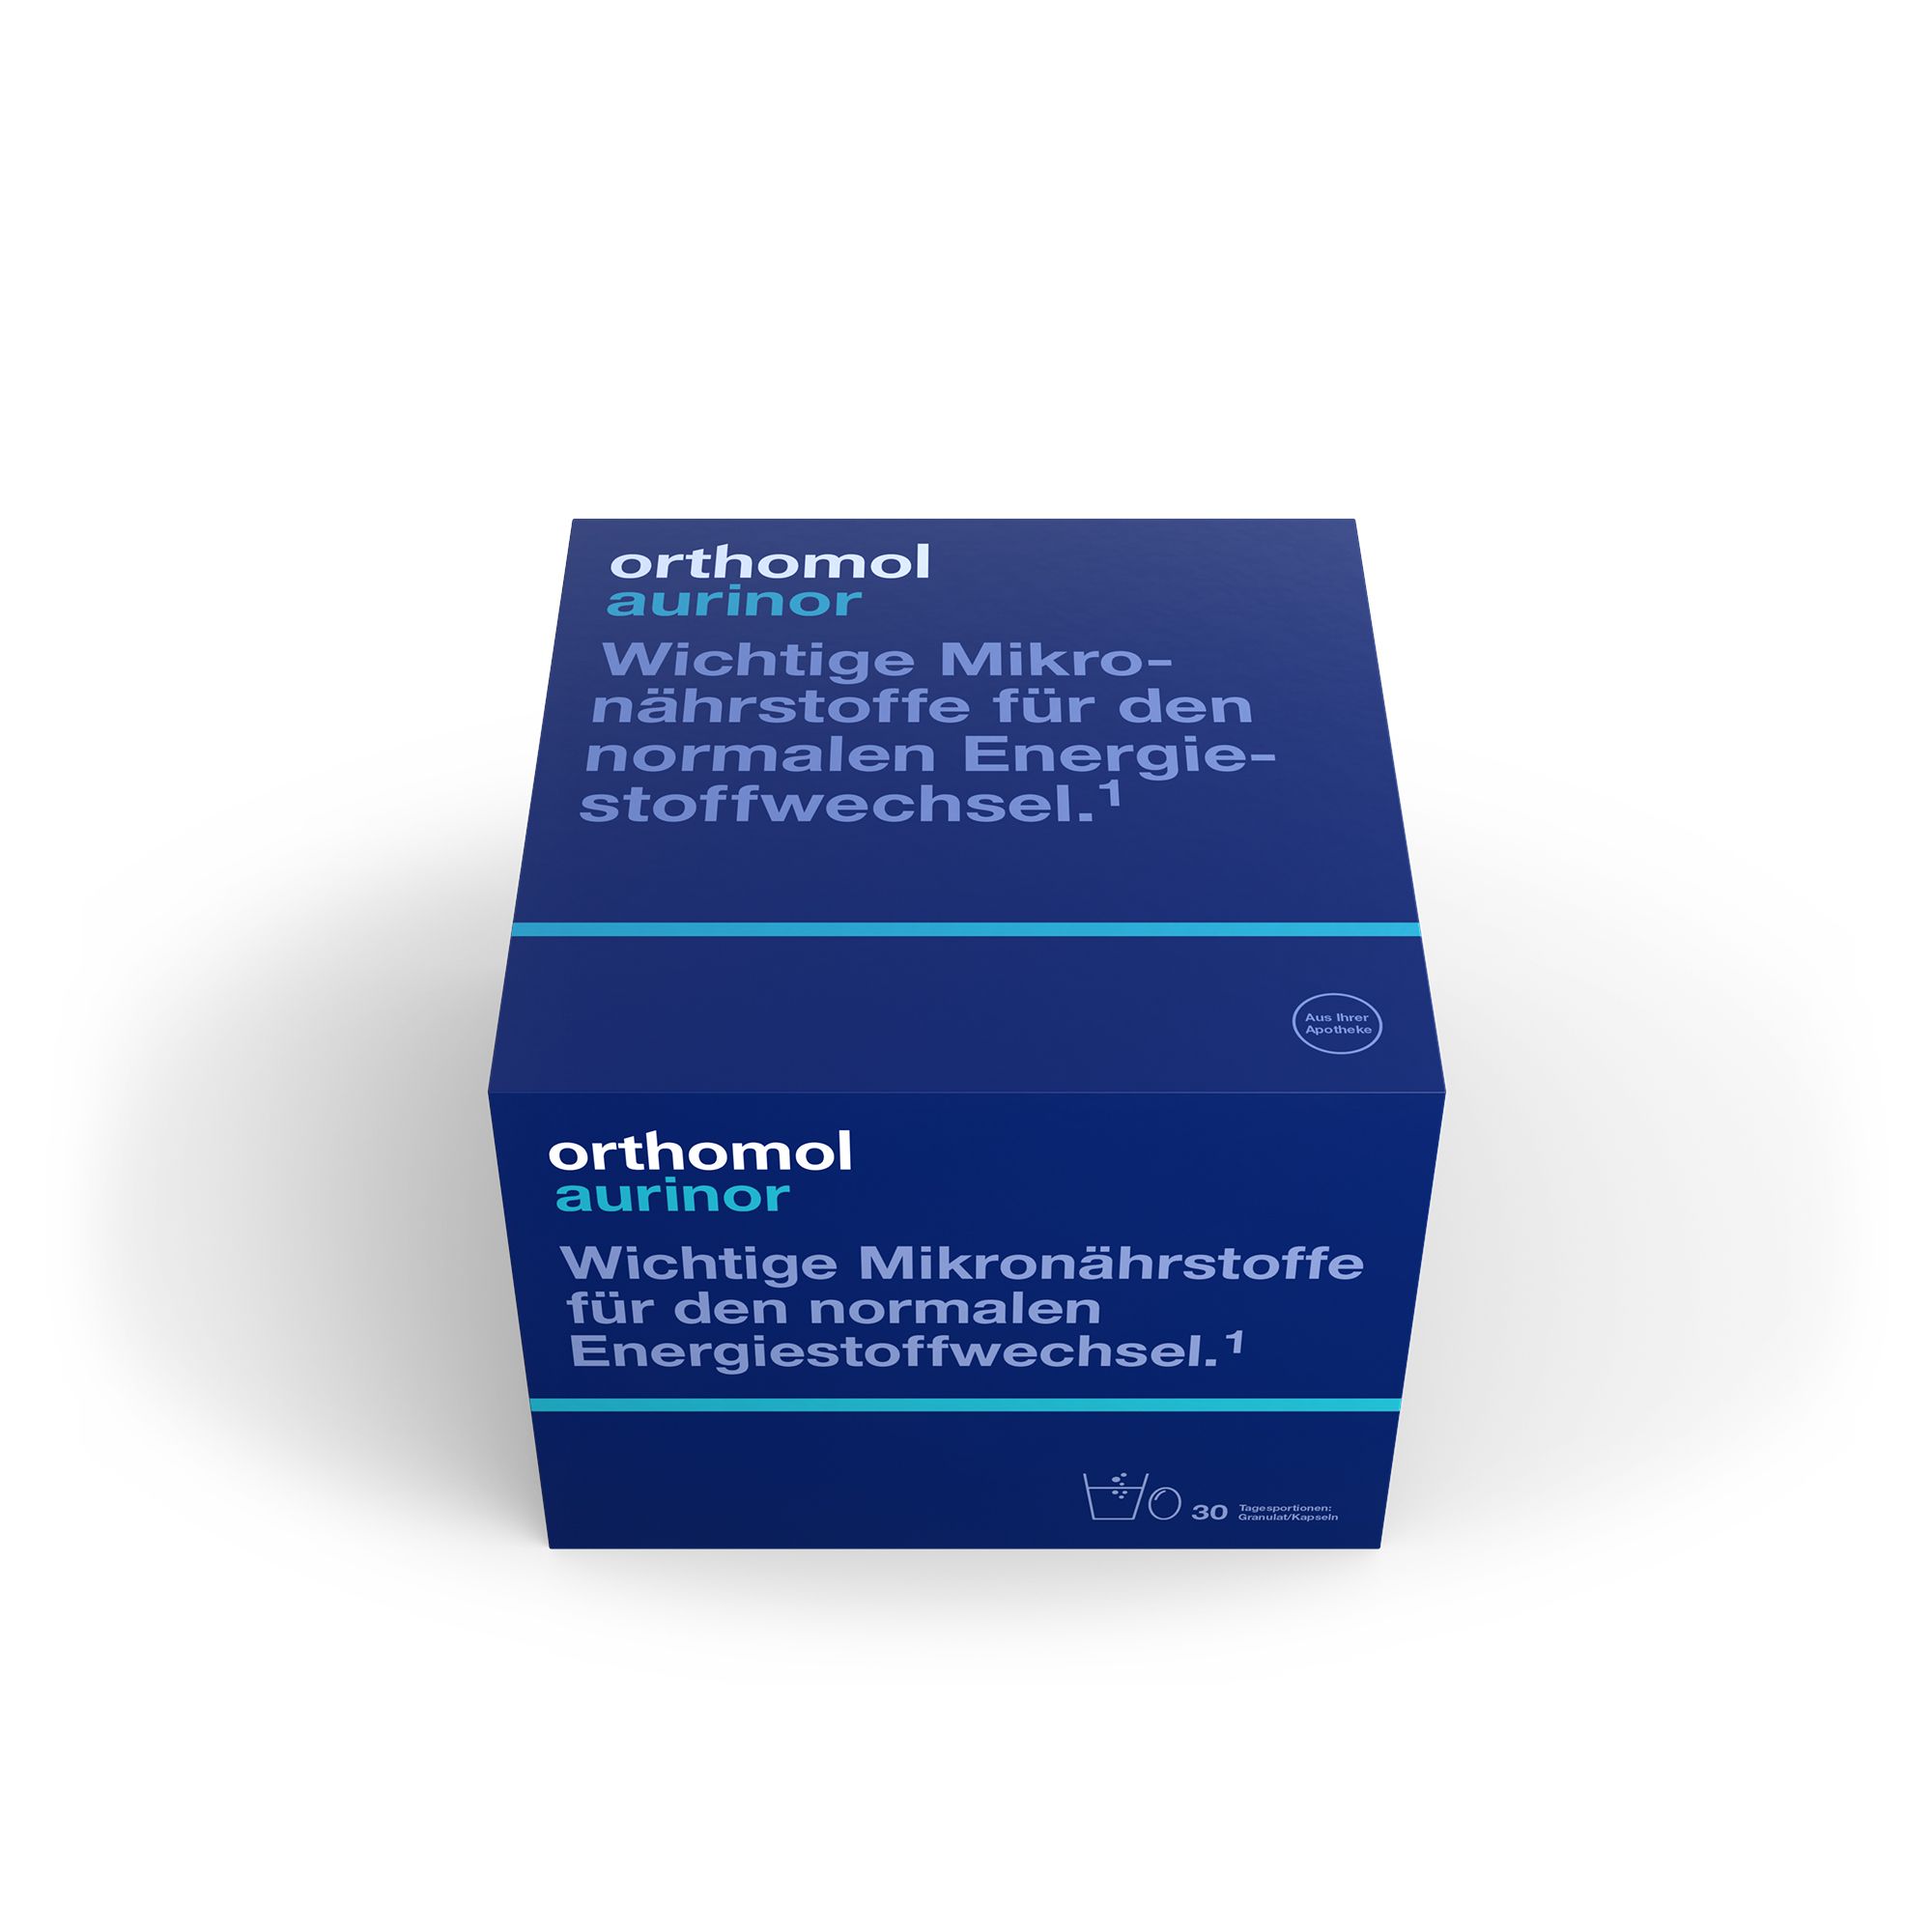 Orthomol Aurinor - unterstützt den Energiestoffwechsel - mit Omega-3-Fettsäure, Vitamin C, Magnesium und Zink - Granulat/Kapseln